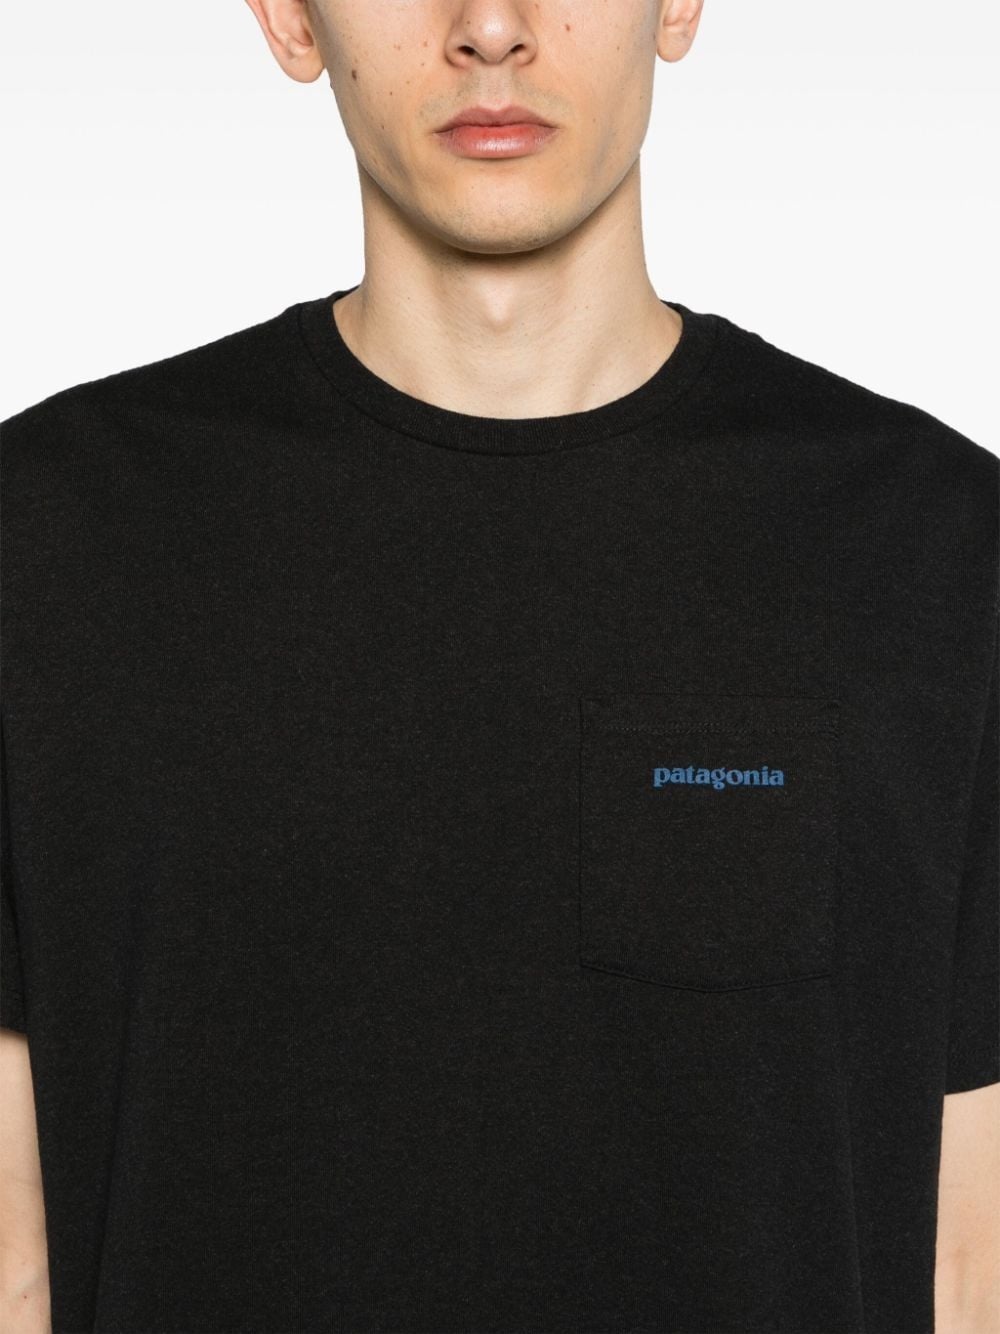 Patagonia T-shirt Pattern Uomo - 3